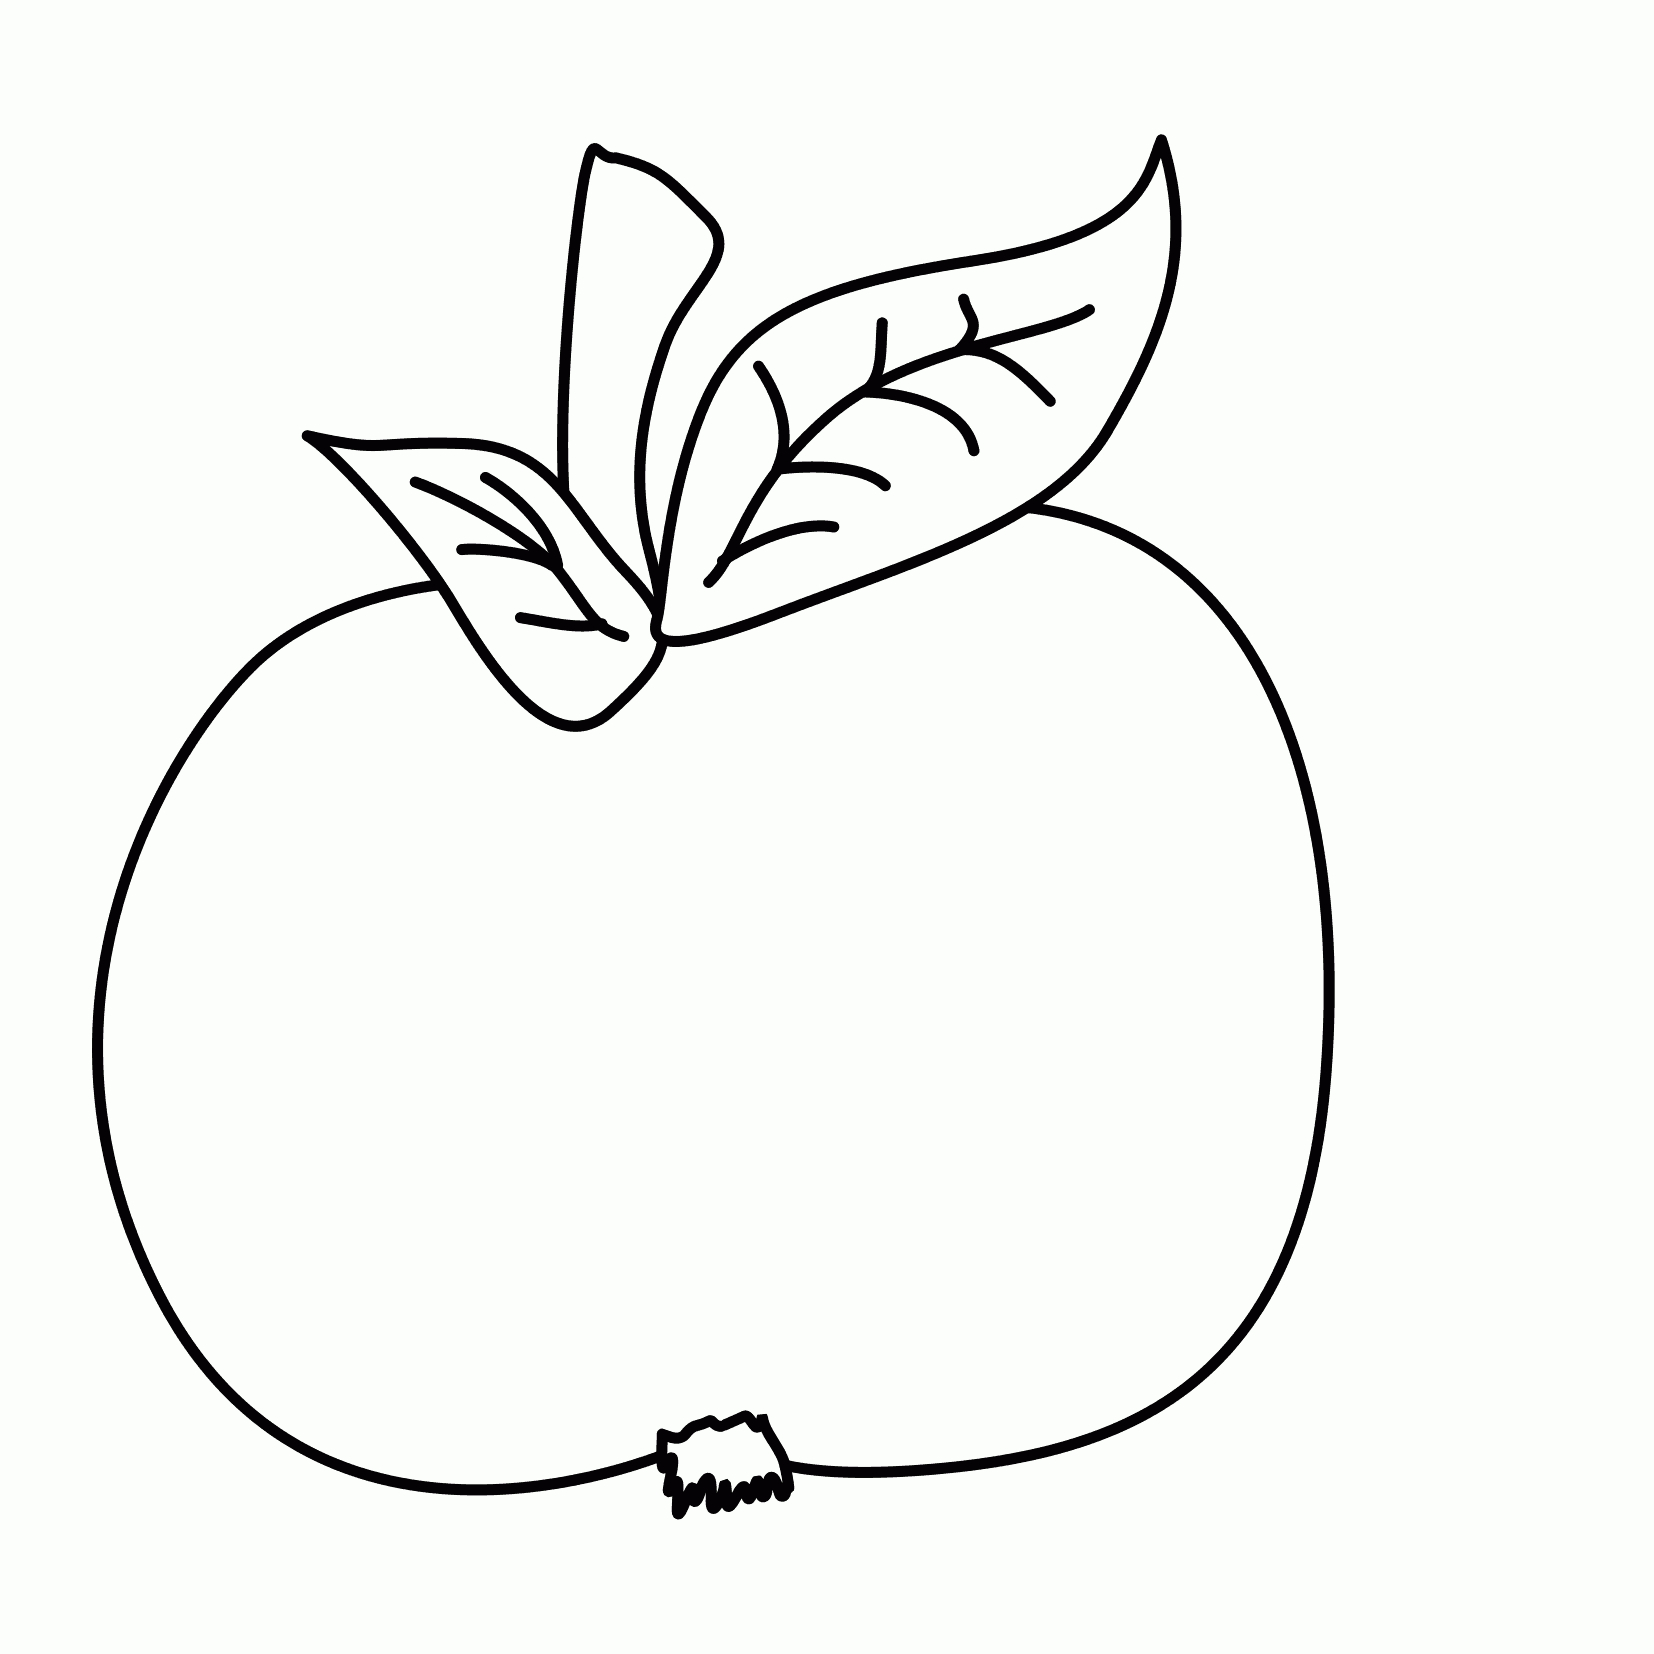 60 Ausmalbild Apfelbaum - Malvorlagen Für Kinder Zum über Apfel Ausmalbild